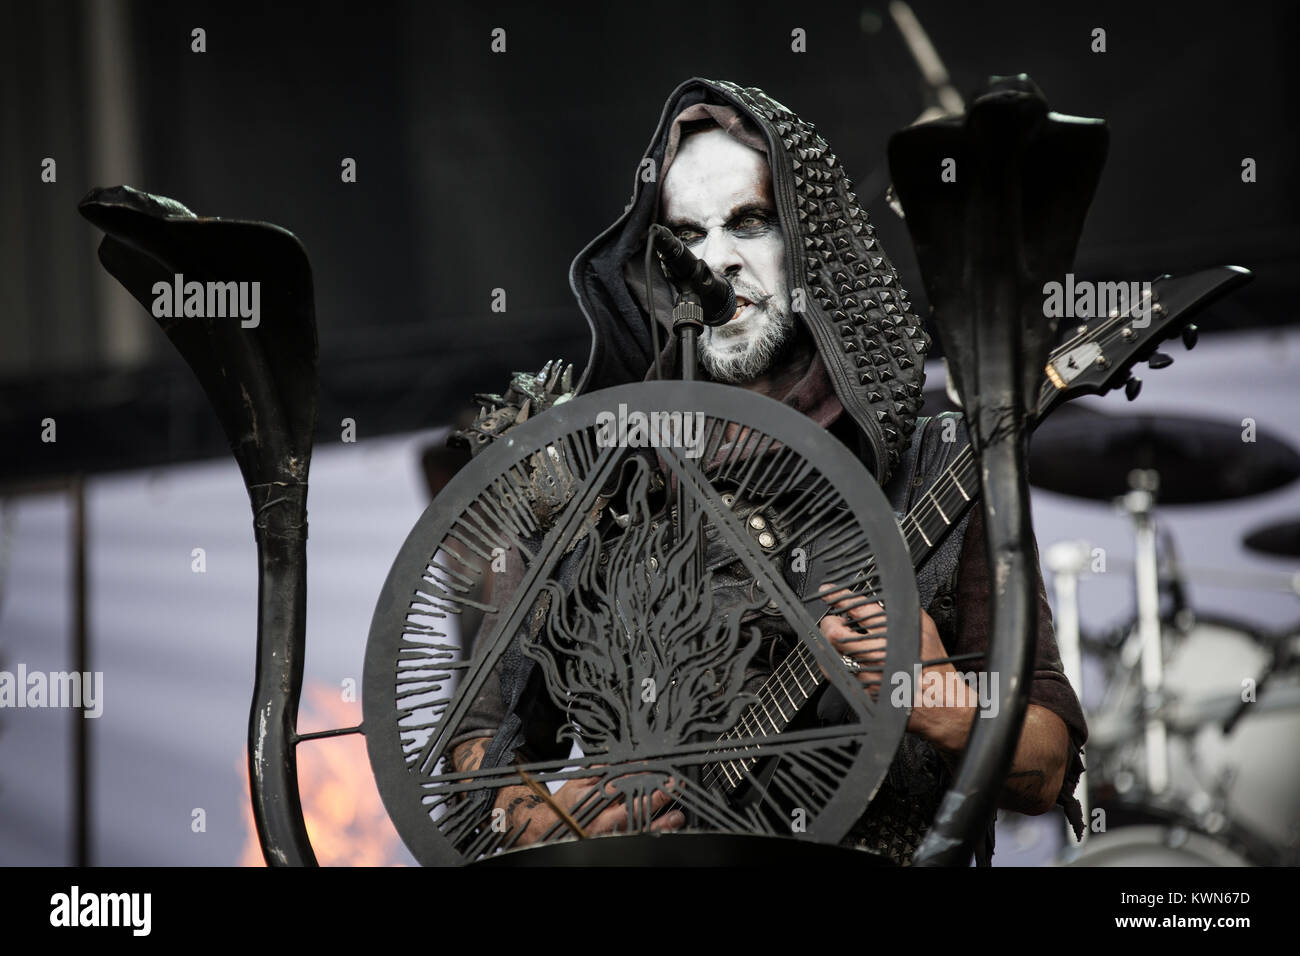 Il polacco della band death metal Behemoth esegue un concerto dal vivo presso il scandinavi heavy metal festival Copenhell 2014 a Copenaghen. Qui la band di frontman Adam "Nergal" Darski è raffigurato dal vivo sul palco. Danimarca 13/06 2014. Foto Stock